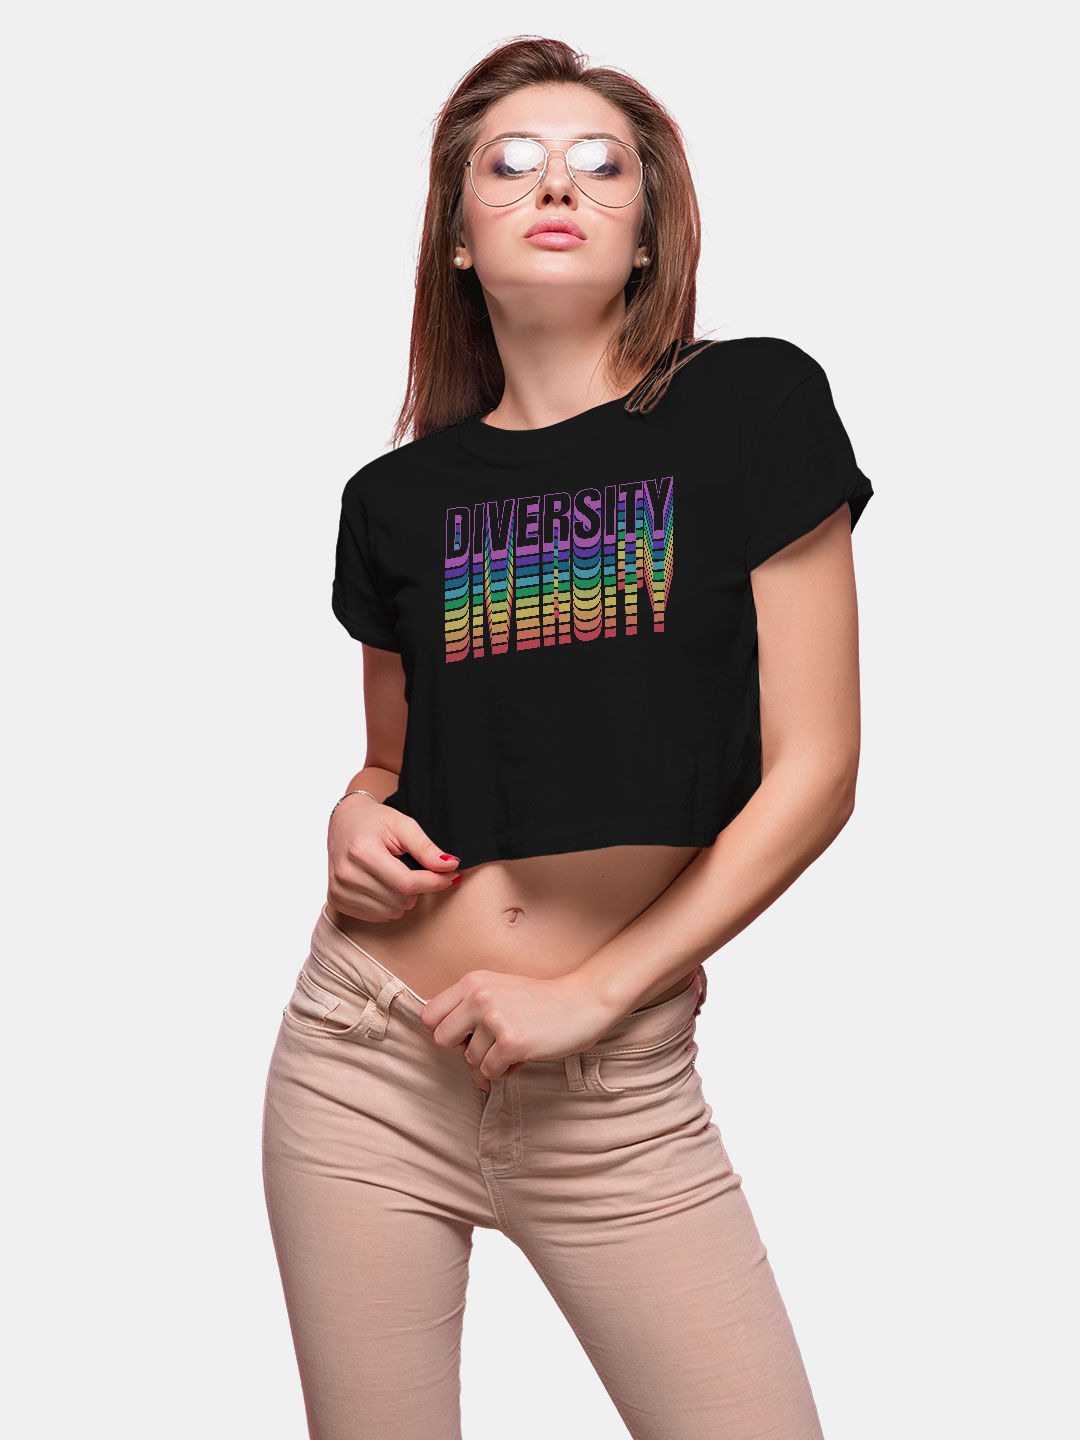 Buy Diversity - Designer Crop Tops T-Shirts Online